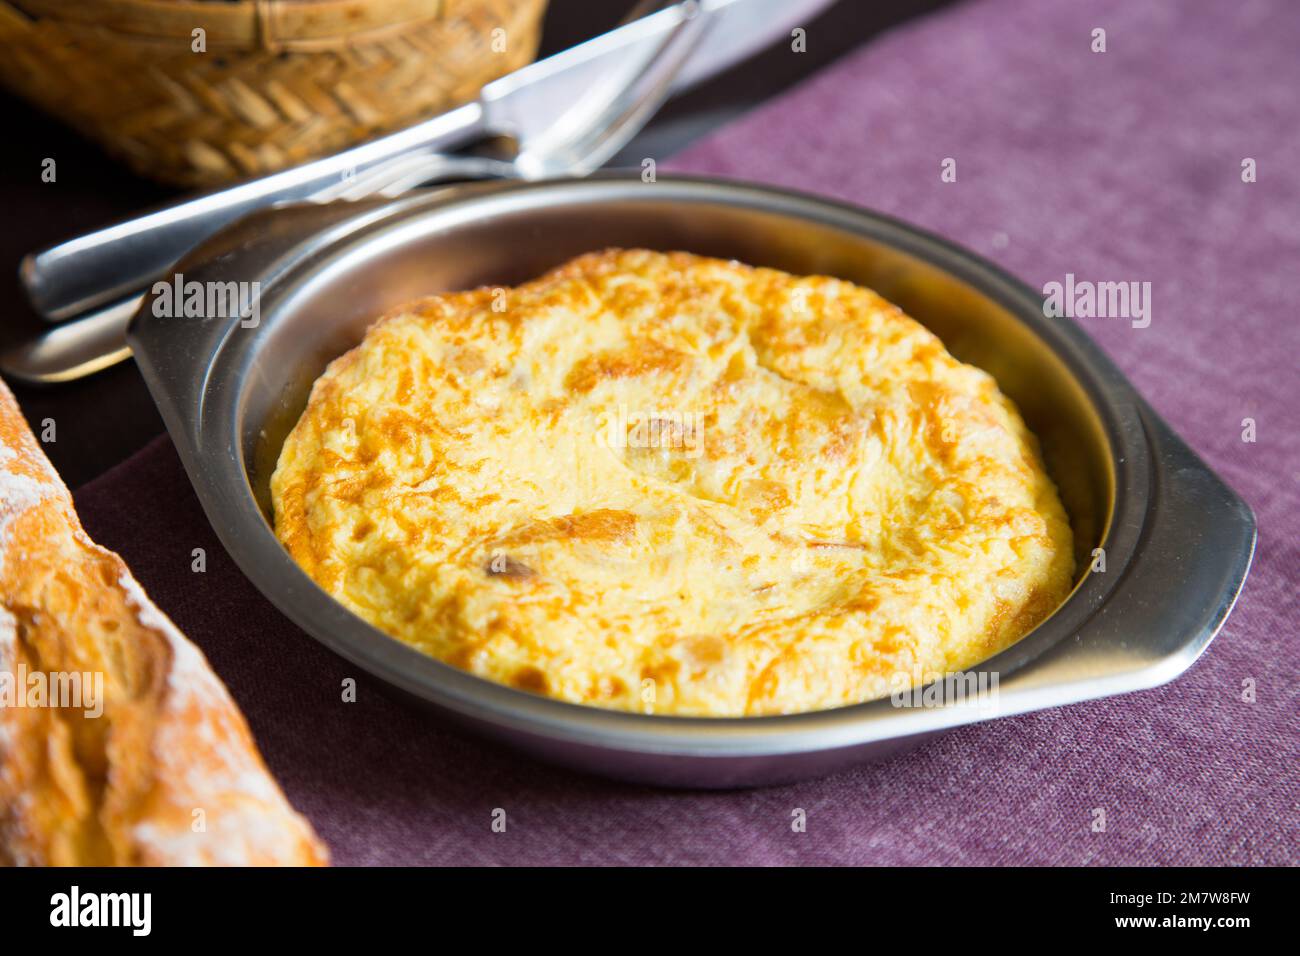 La frittata di patate, o frittata spagnola, è un'omelette o un'omelette alla quale vengono aggiunte le patate tritate. Foto Stock